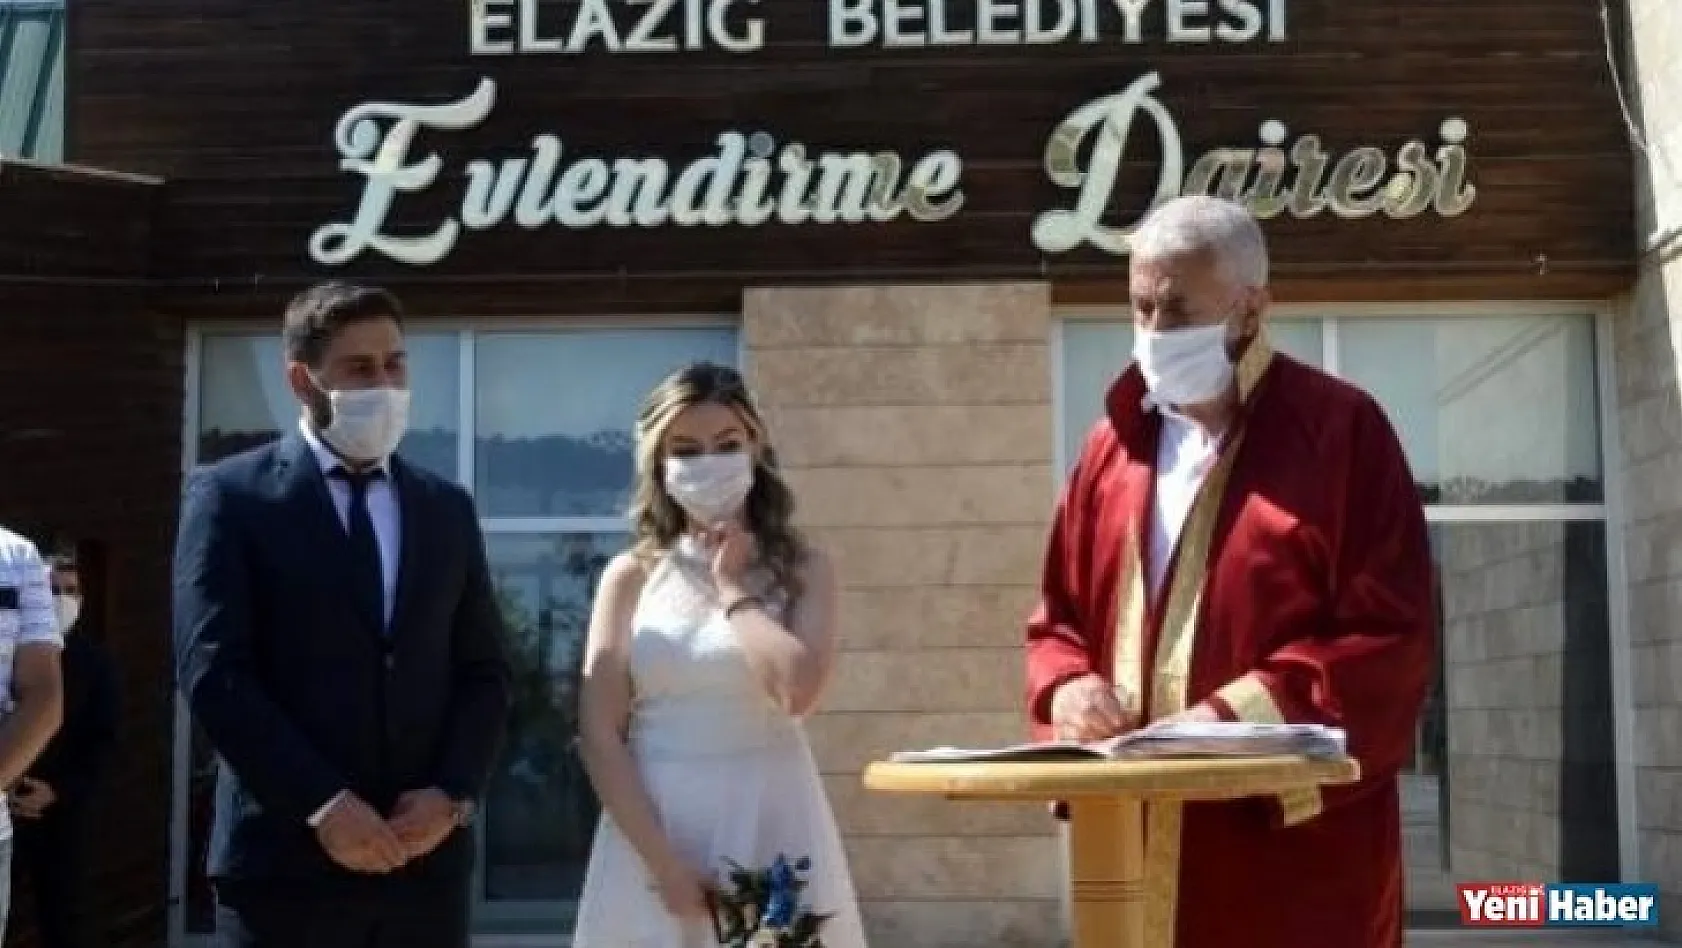 Elazığ'da Nikahlara Kısıtlama!